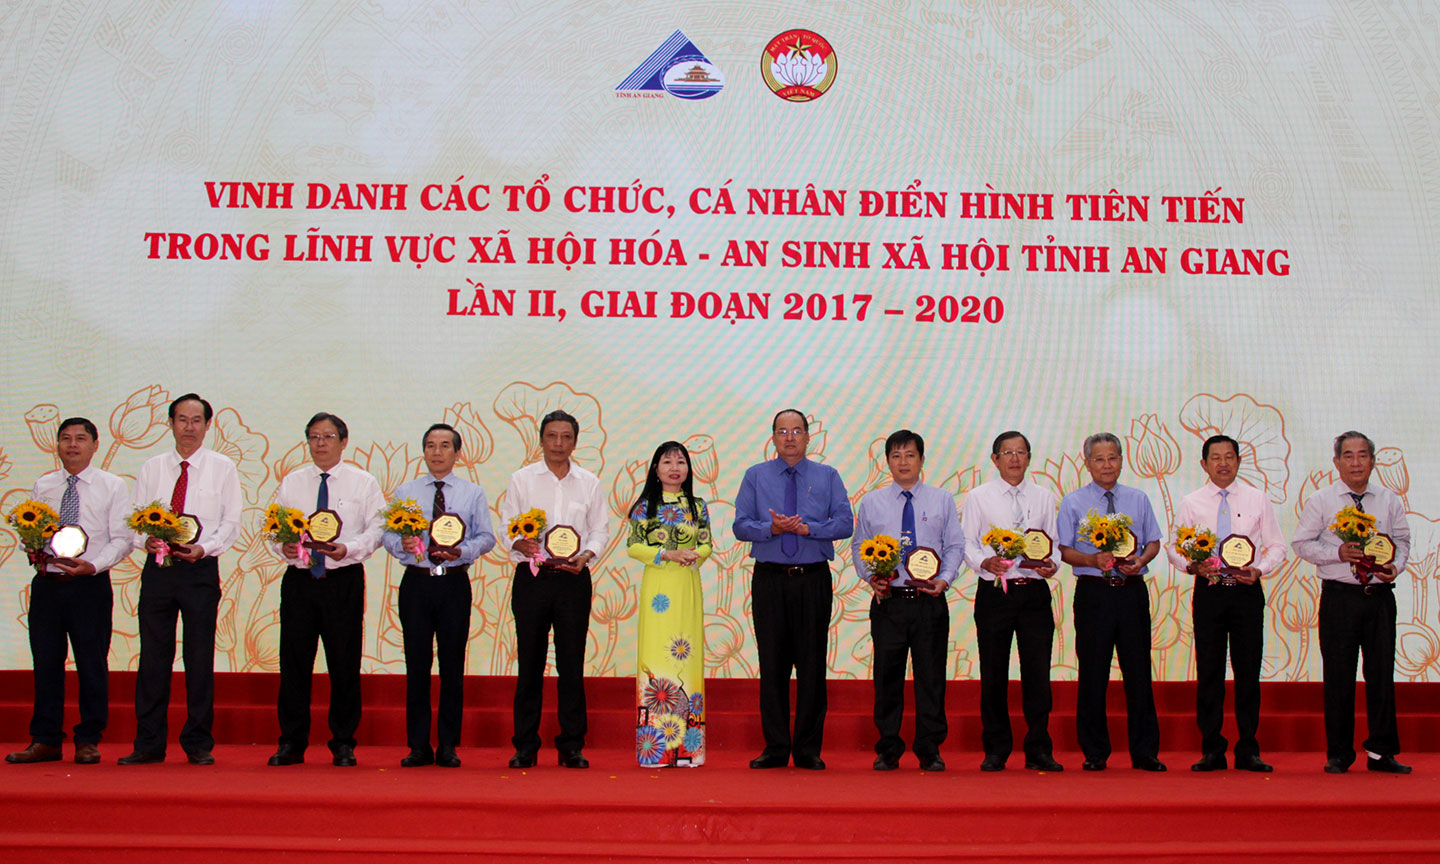 Ông Nguyễn Văn Hung - Phó Tổng Giám đốc Tập đoàn Sao Mai (bìa phải) nhận bằng khen của UBND tỉnh An Giang vì doanh nghiệp đã có nhiều đóng góp trong lĩnh vực xã hội hóa và an sinh xã hội giai đoạn 2017-2020.